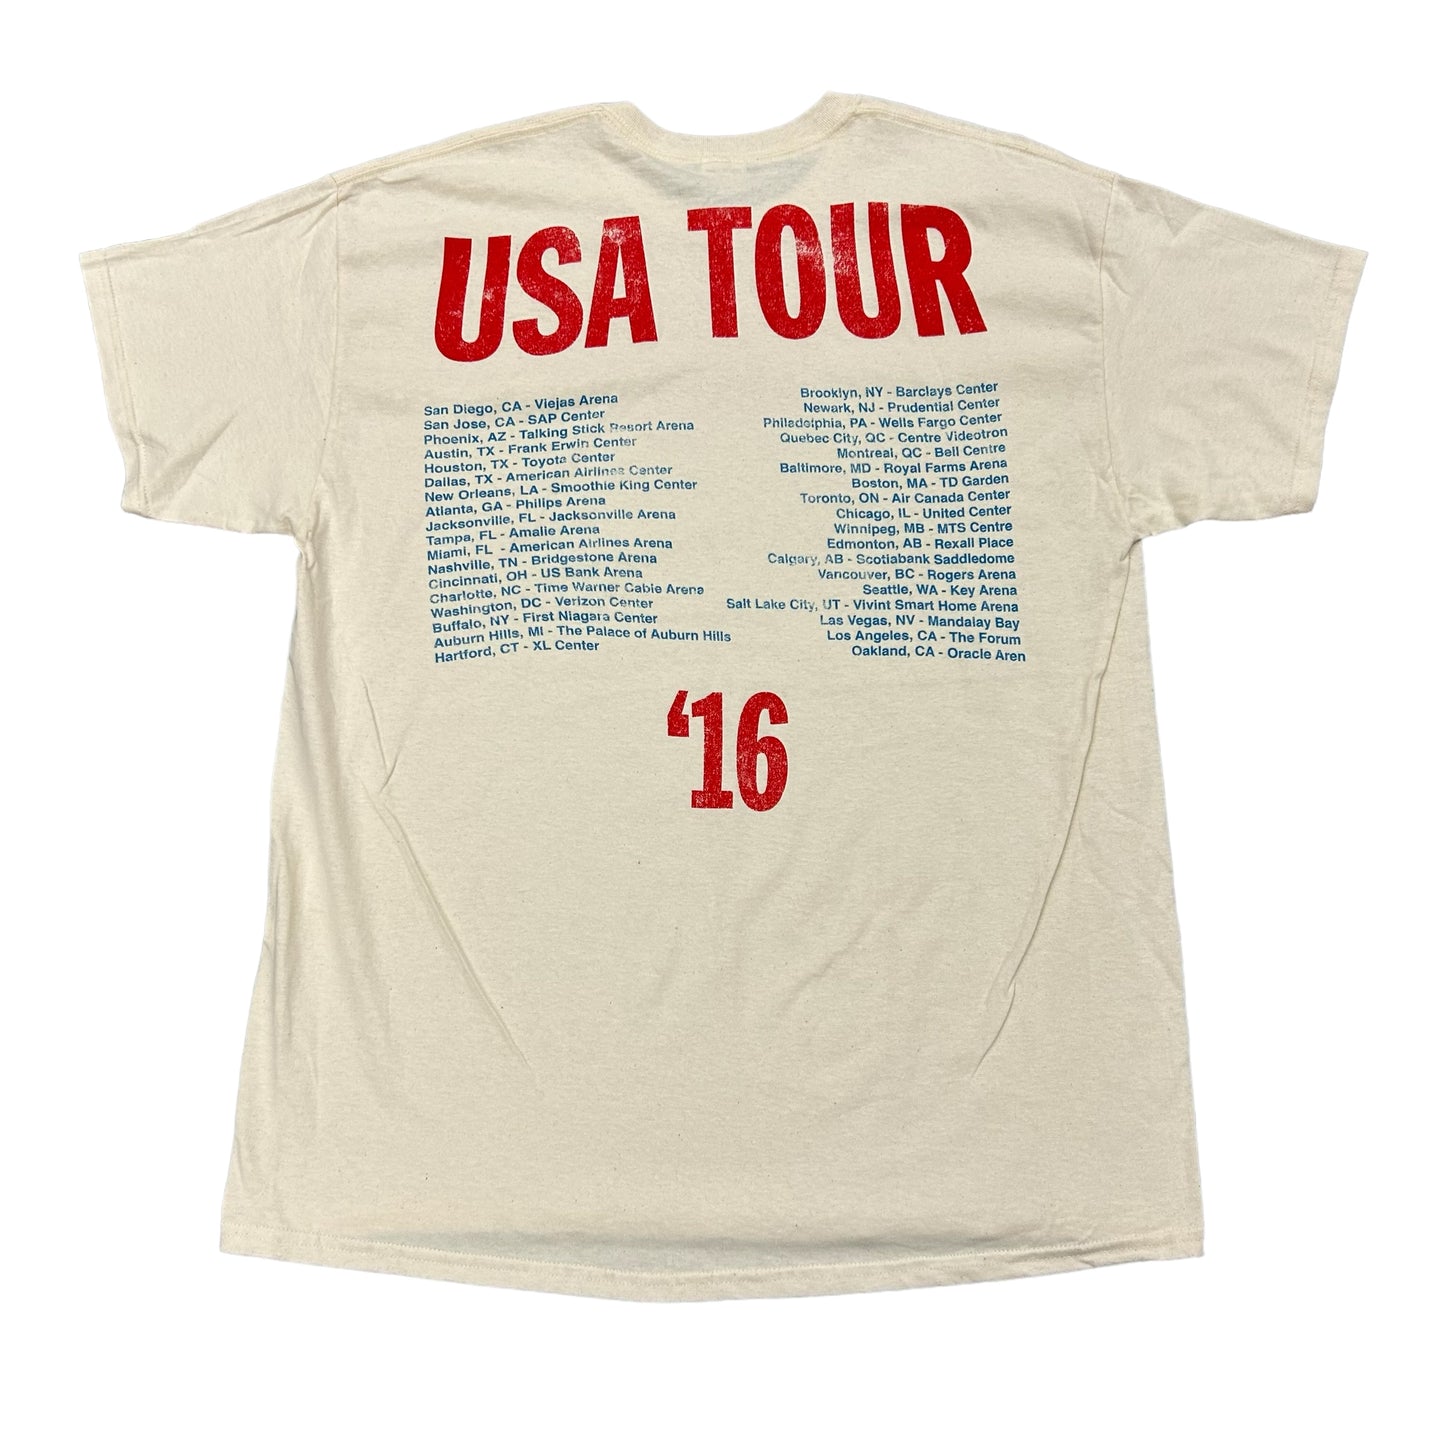 Travis Scott Rodeo ‘16 USA Tour Creme Tee